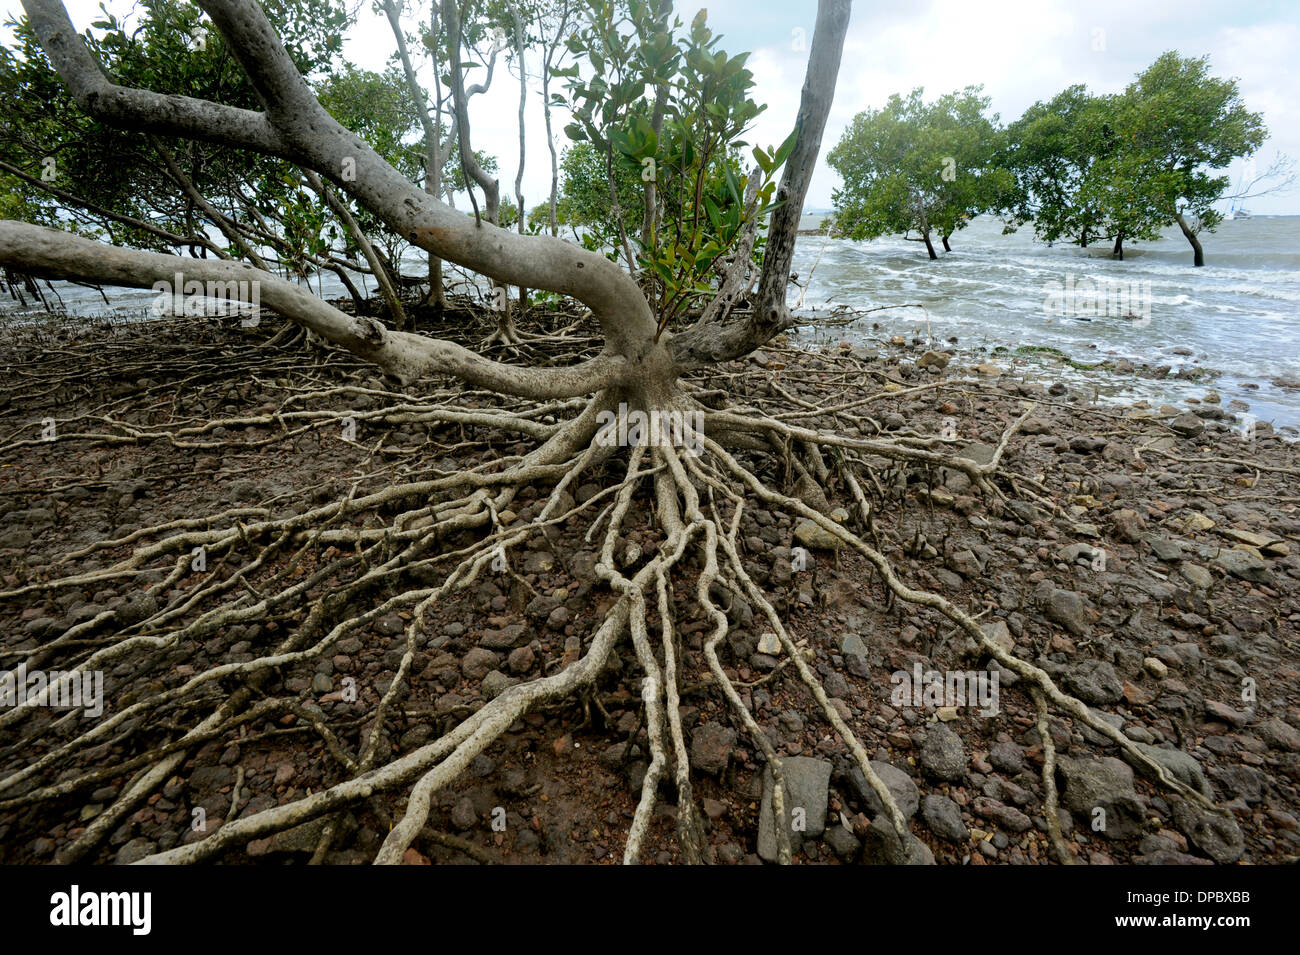 Les racines de mangrove sont clairement visibles au-dessus de la marée montante dans cette image tourné en Morton Bay Australie Brisbane Banque D'Images